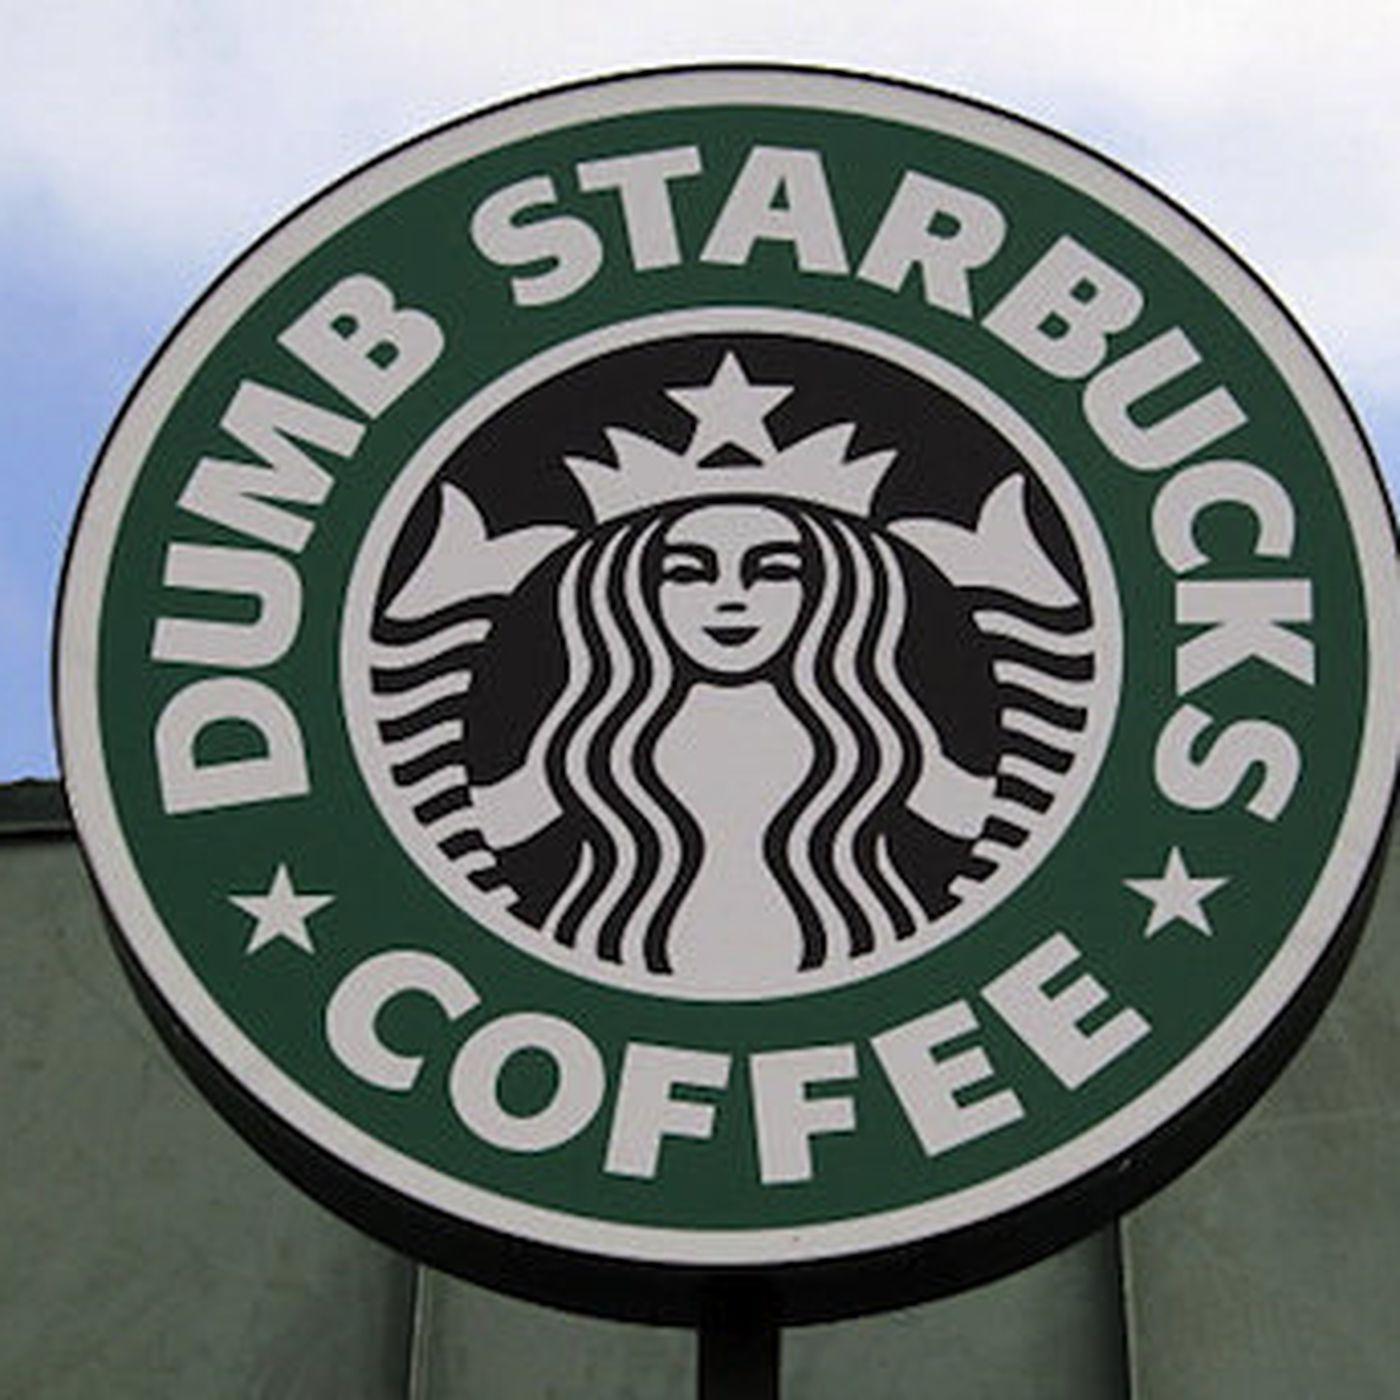 Dumb Starbucks Logo - Real Starbucks: Dumb Starbucks 'Cannot Use Our Name' - Eater